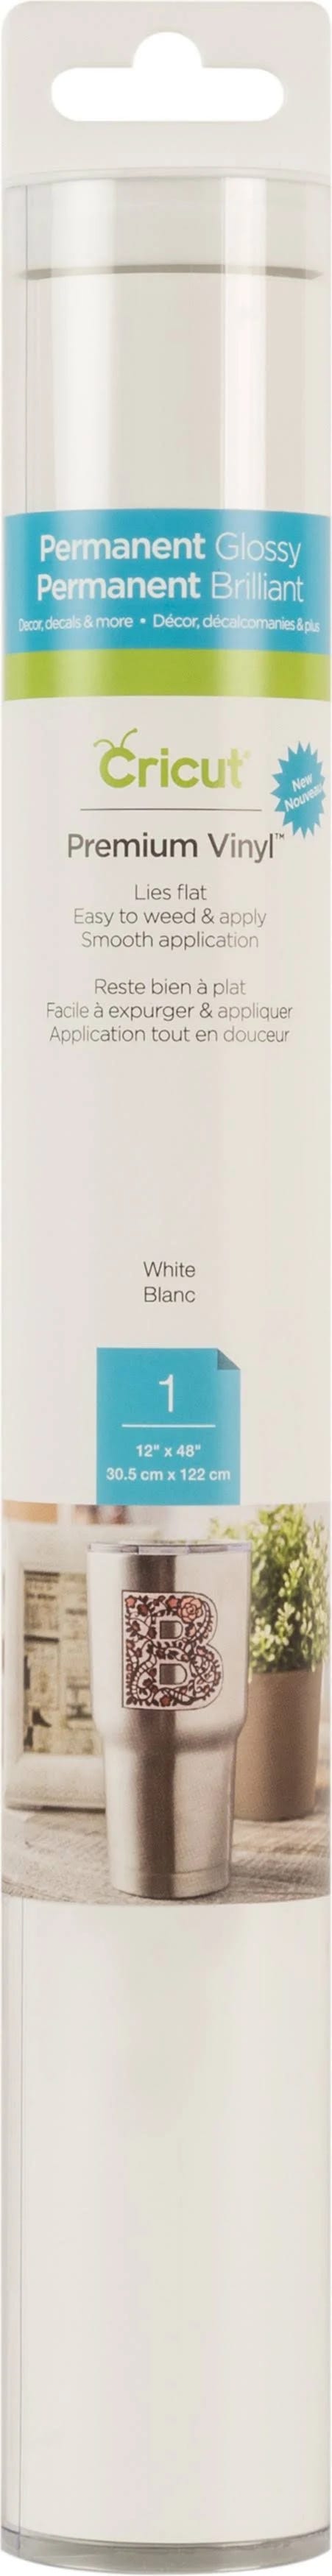 Cricut Premium Permanent Vinyl - White | Image